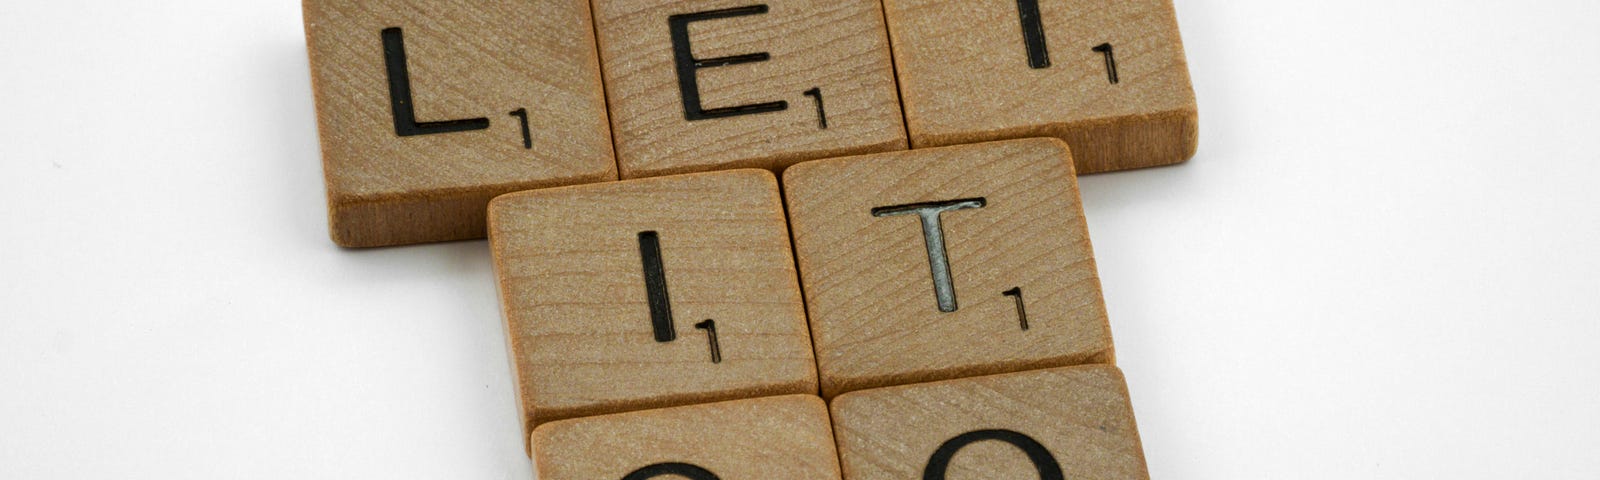 Scrabble tiles saying “Let it go”